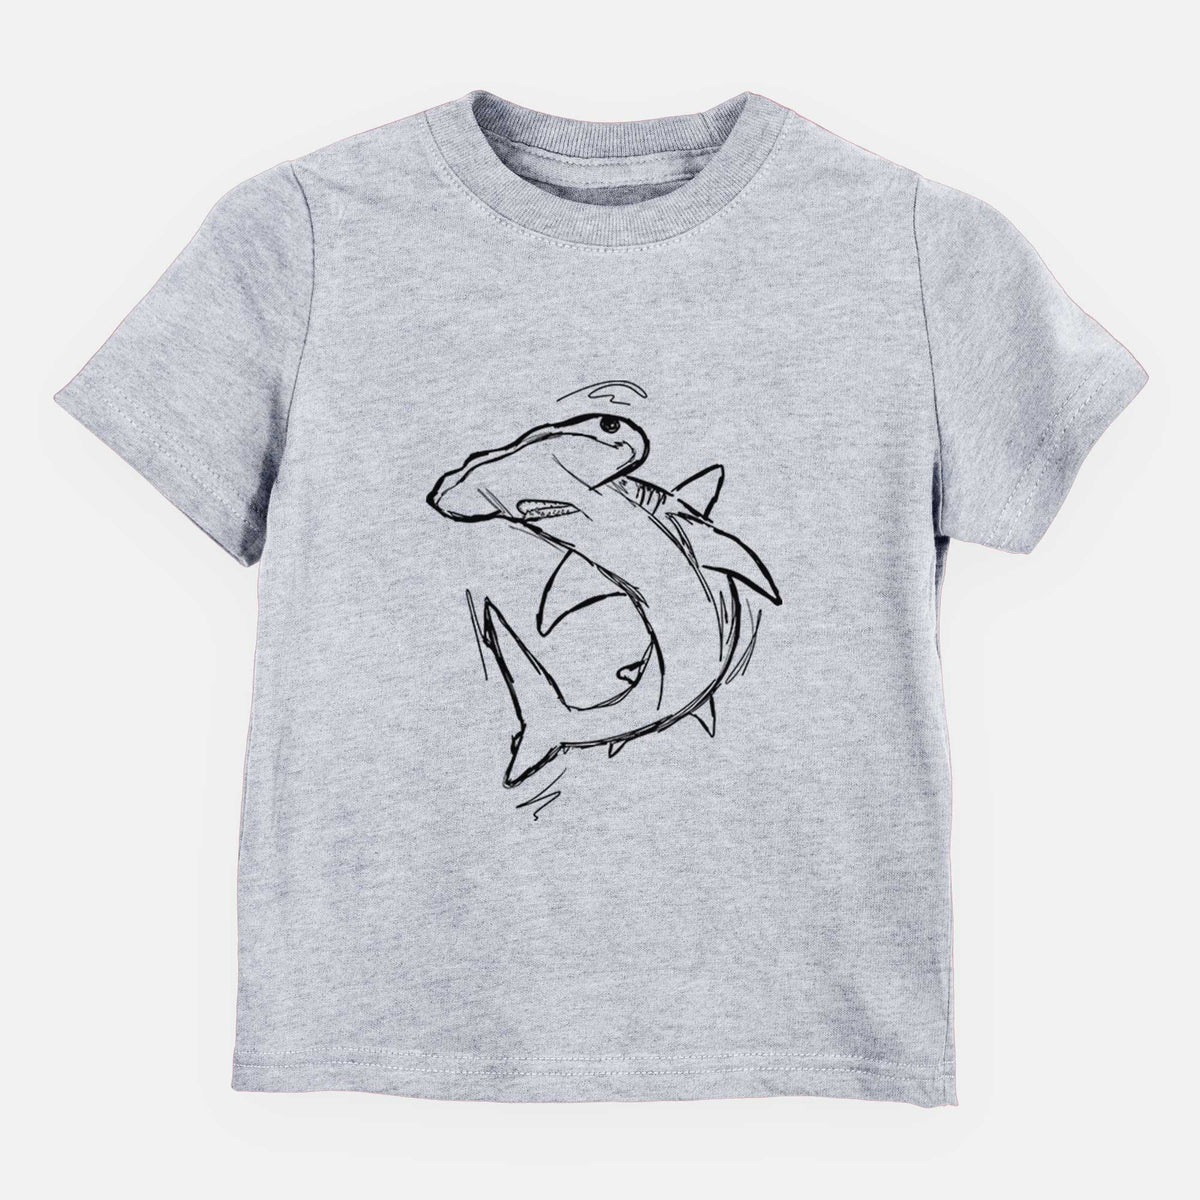 Hammerhead Shark - Kids Shirt